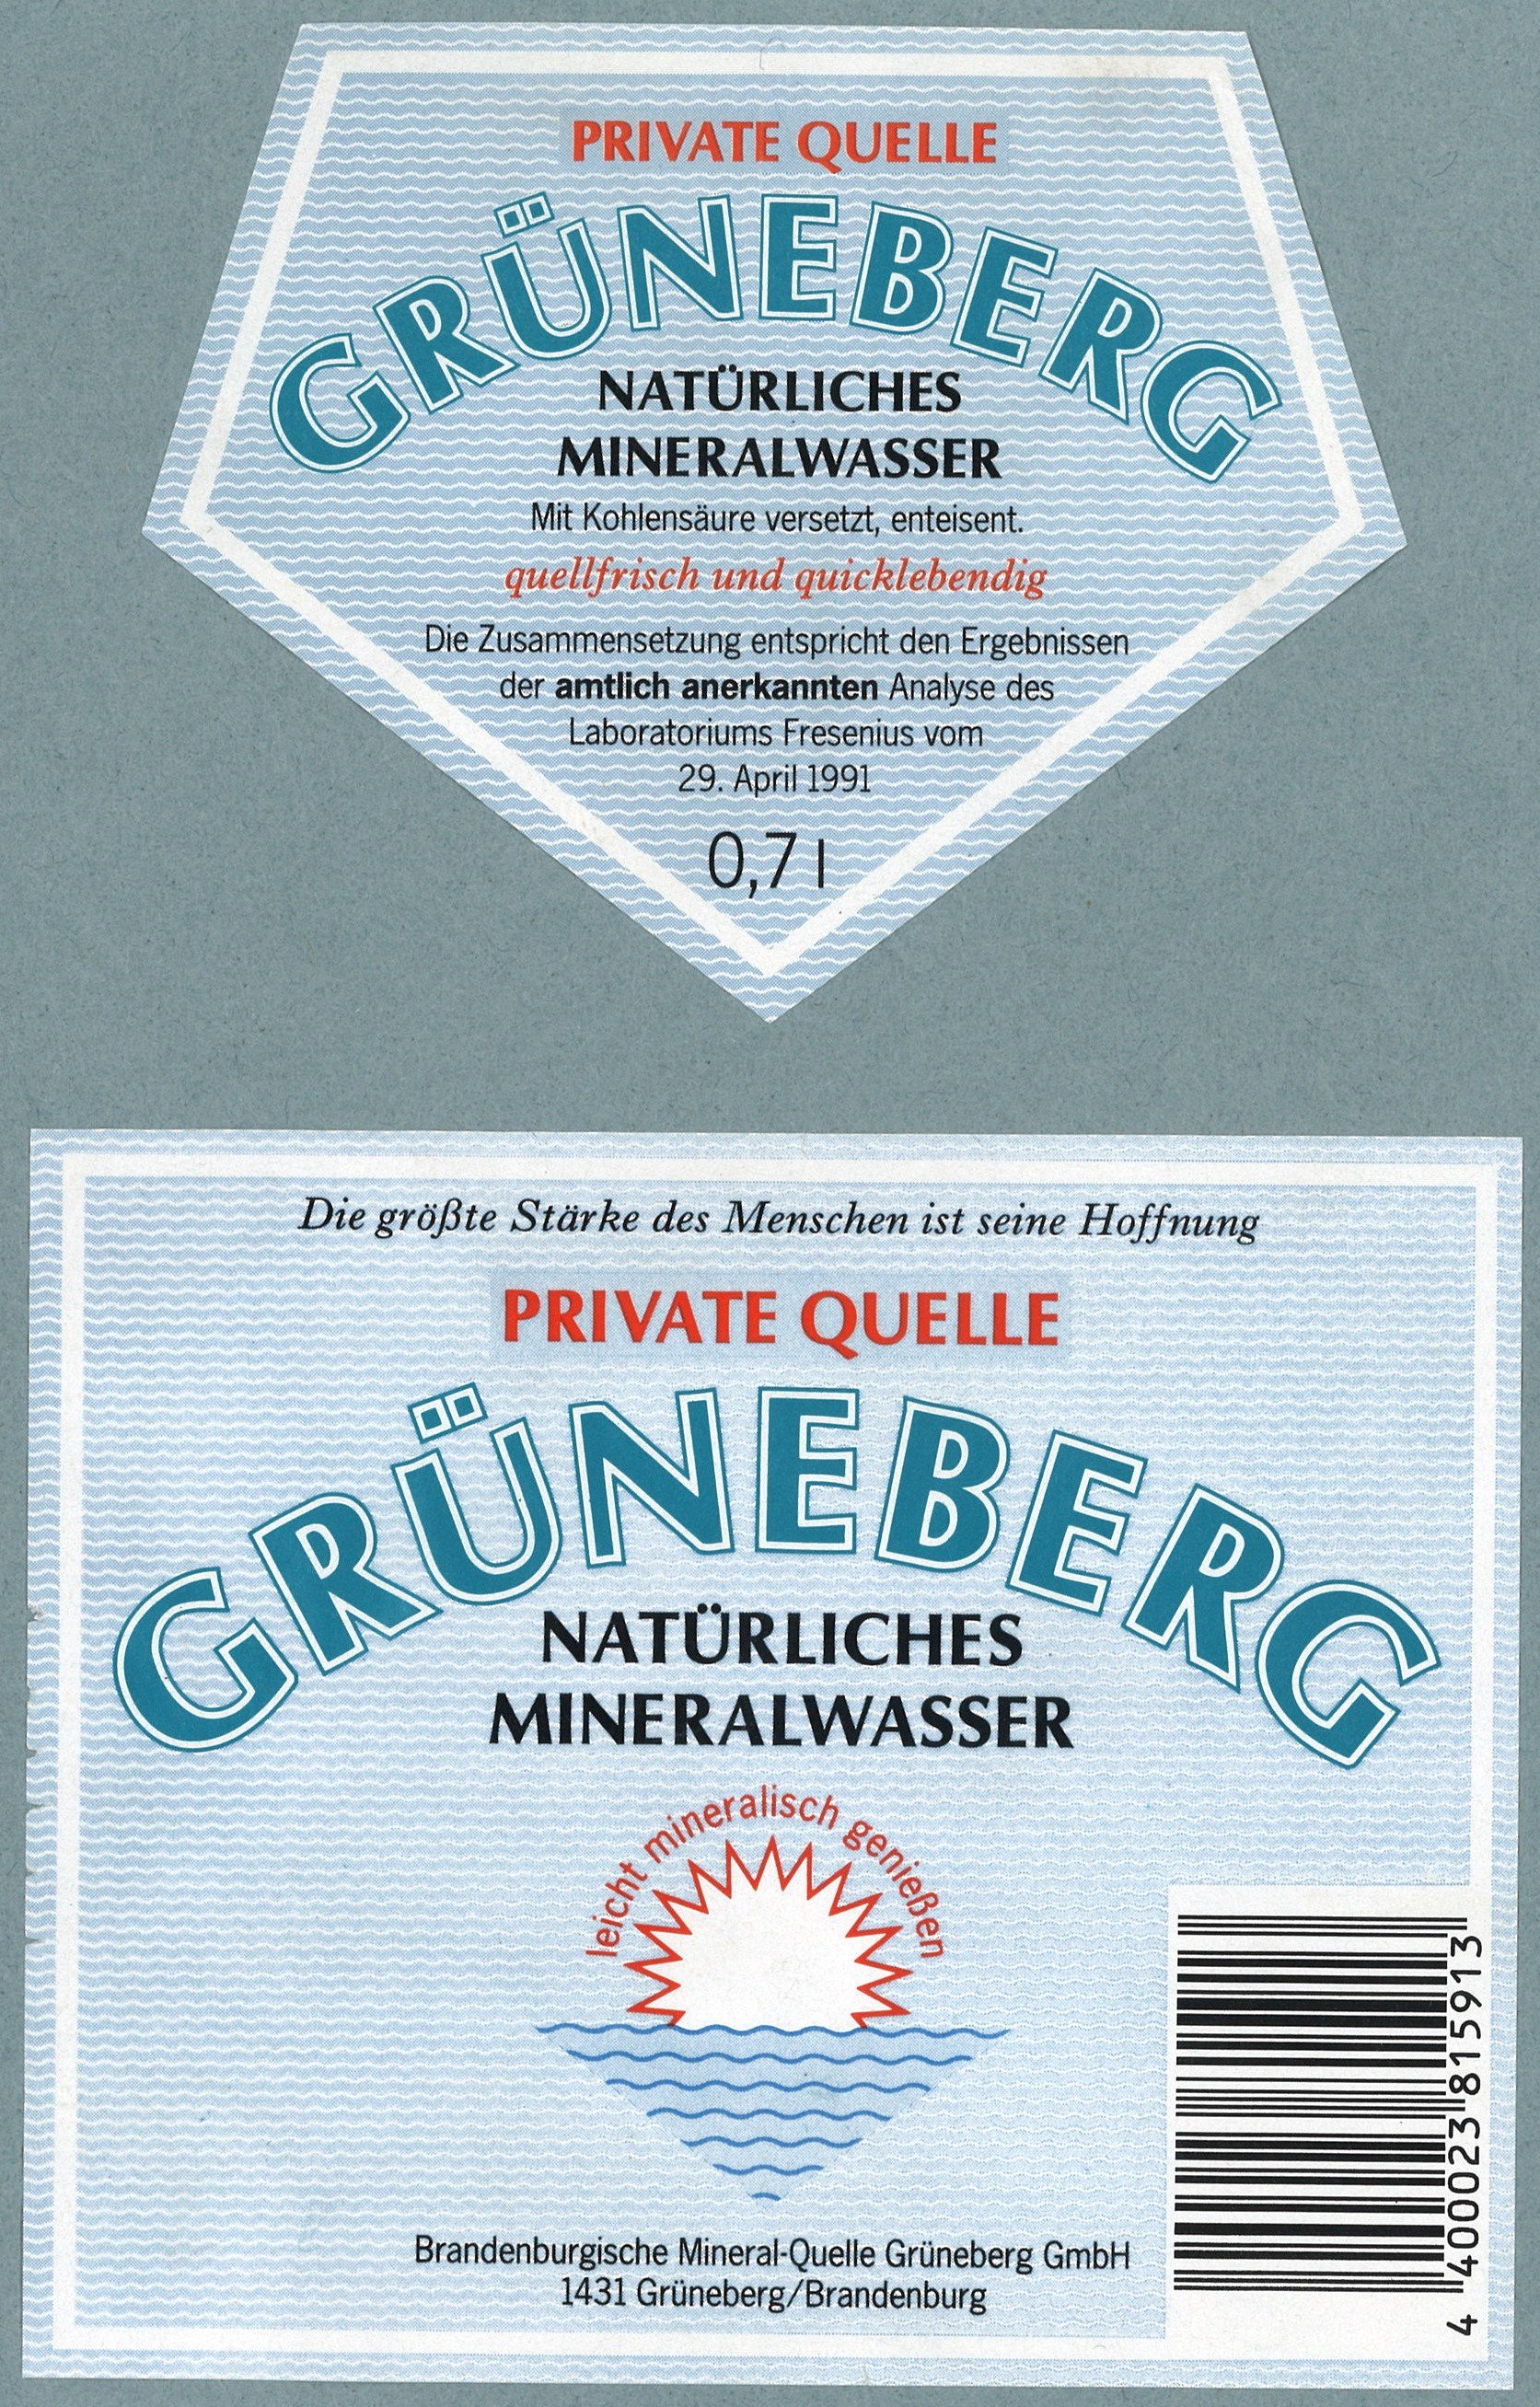 Grüneberg, Brandenburgische Mineral-Quelle GmbH: Mineralwasser "Grüneberg" (Landesgeschichtliche Vereinigung für die Mark Brandenburg e.V., Archiv CC BY)